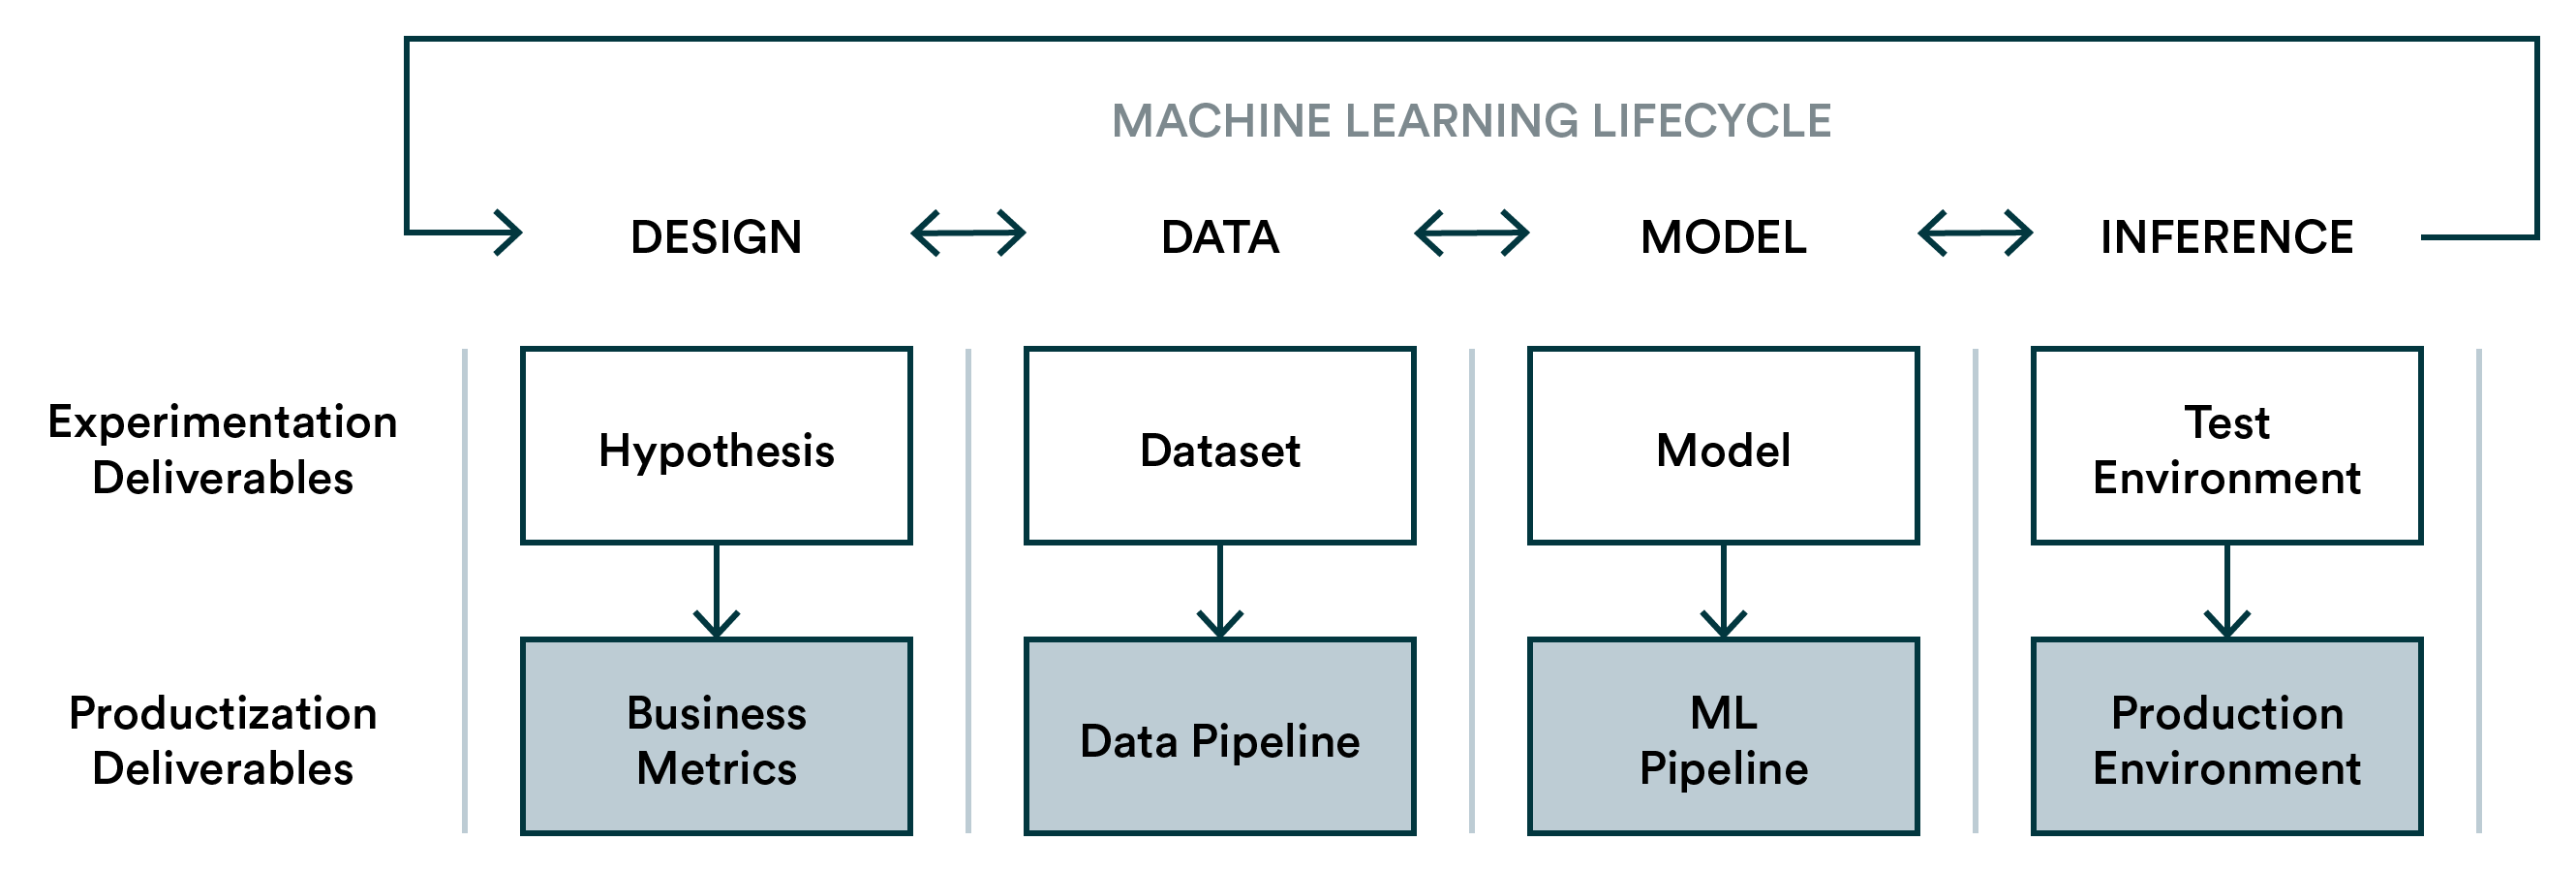 Machine Learning Lifecycle - Experimentation & Productization